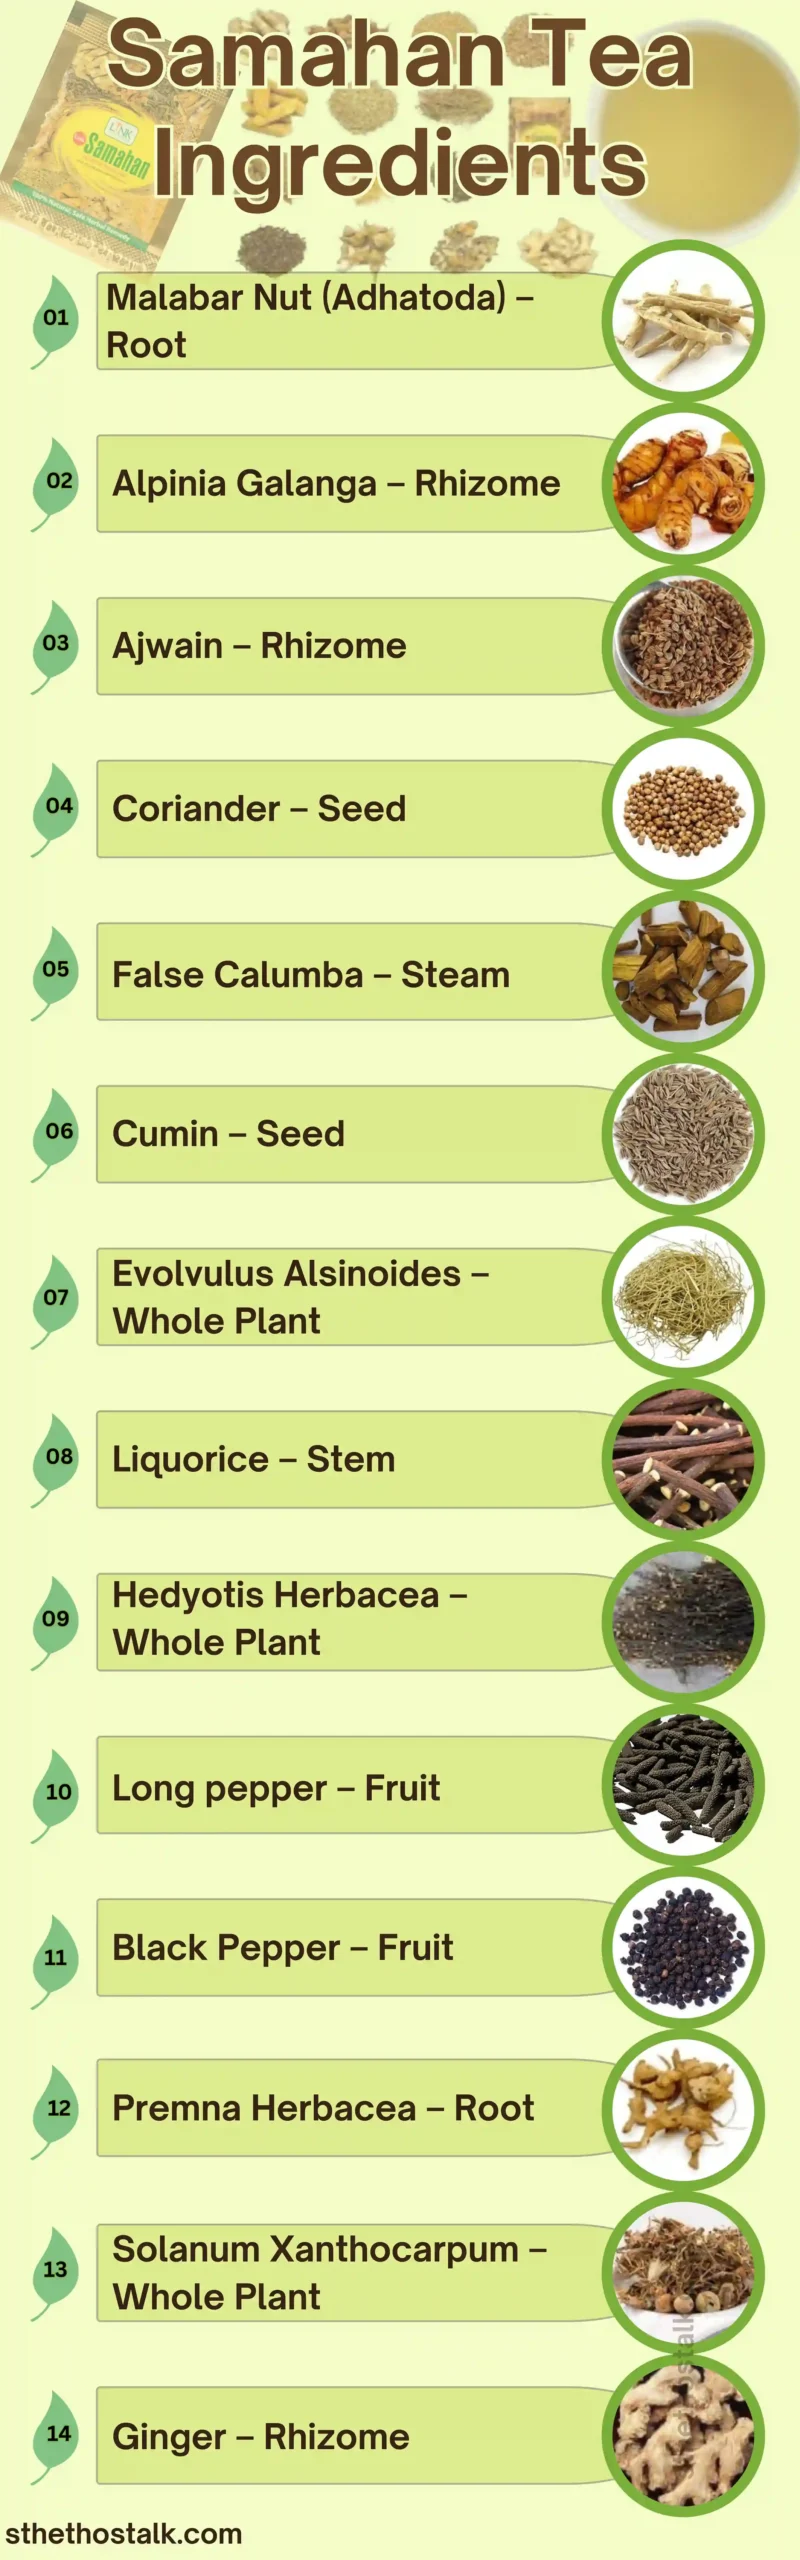 Samahan tea ingredients